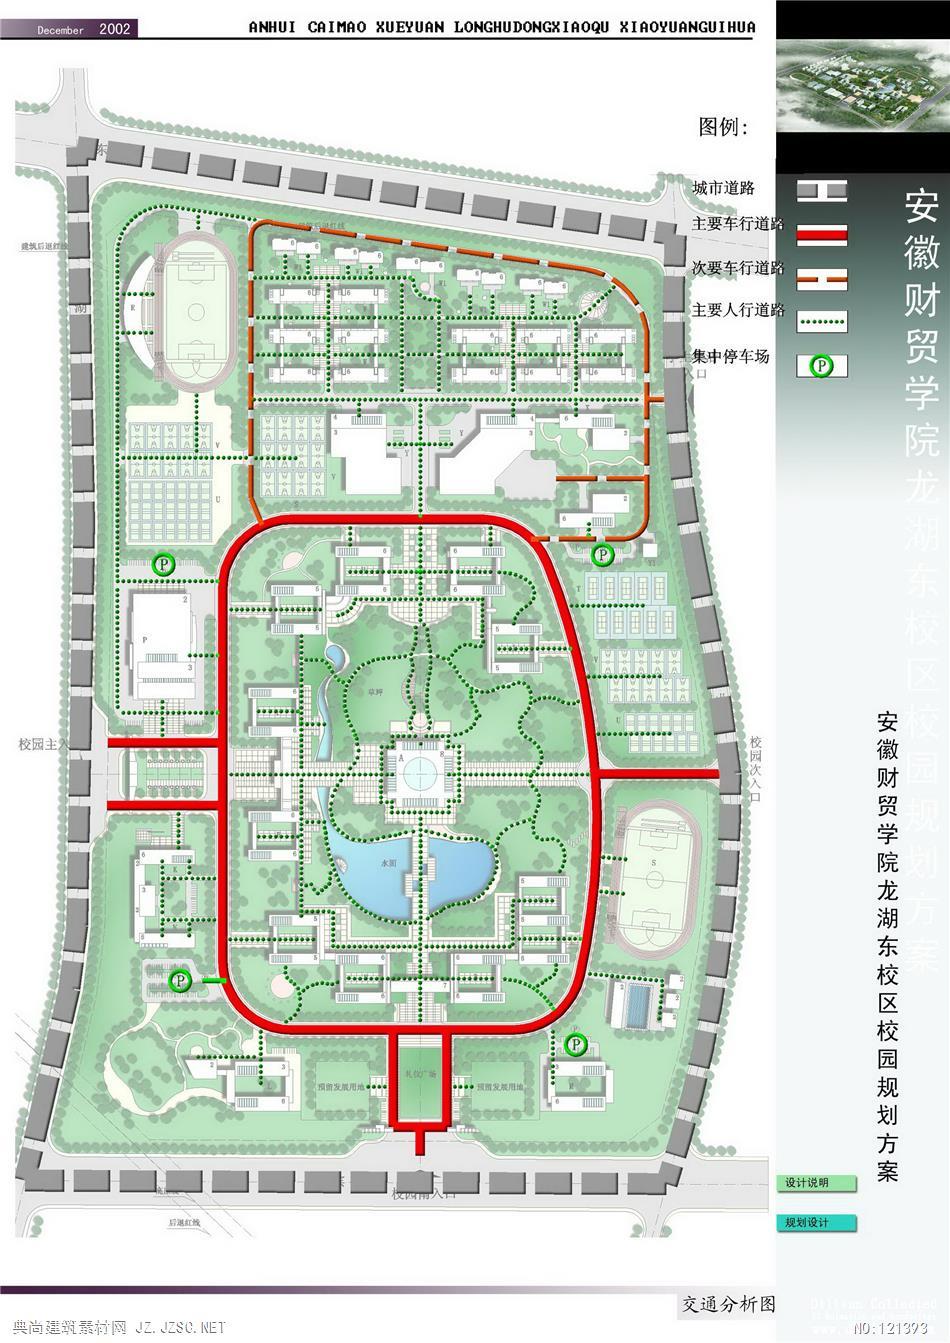 安徽财贸学院龙湖东校区校园总体规划设计zip-rar 公共建筑zip-rar